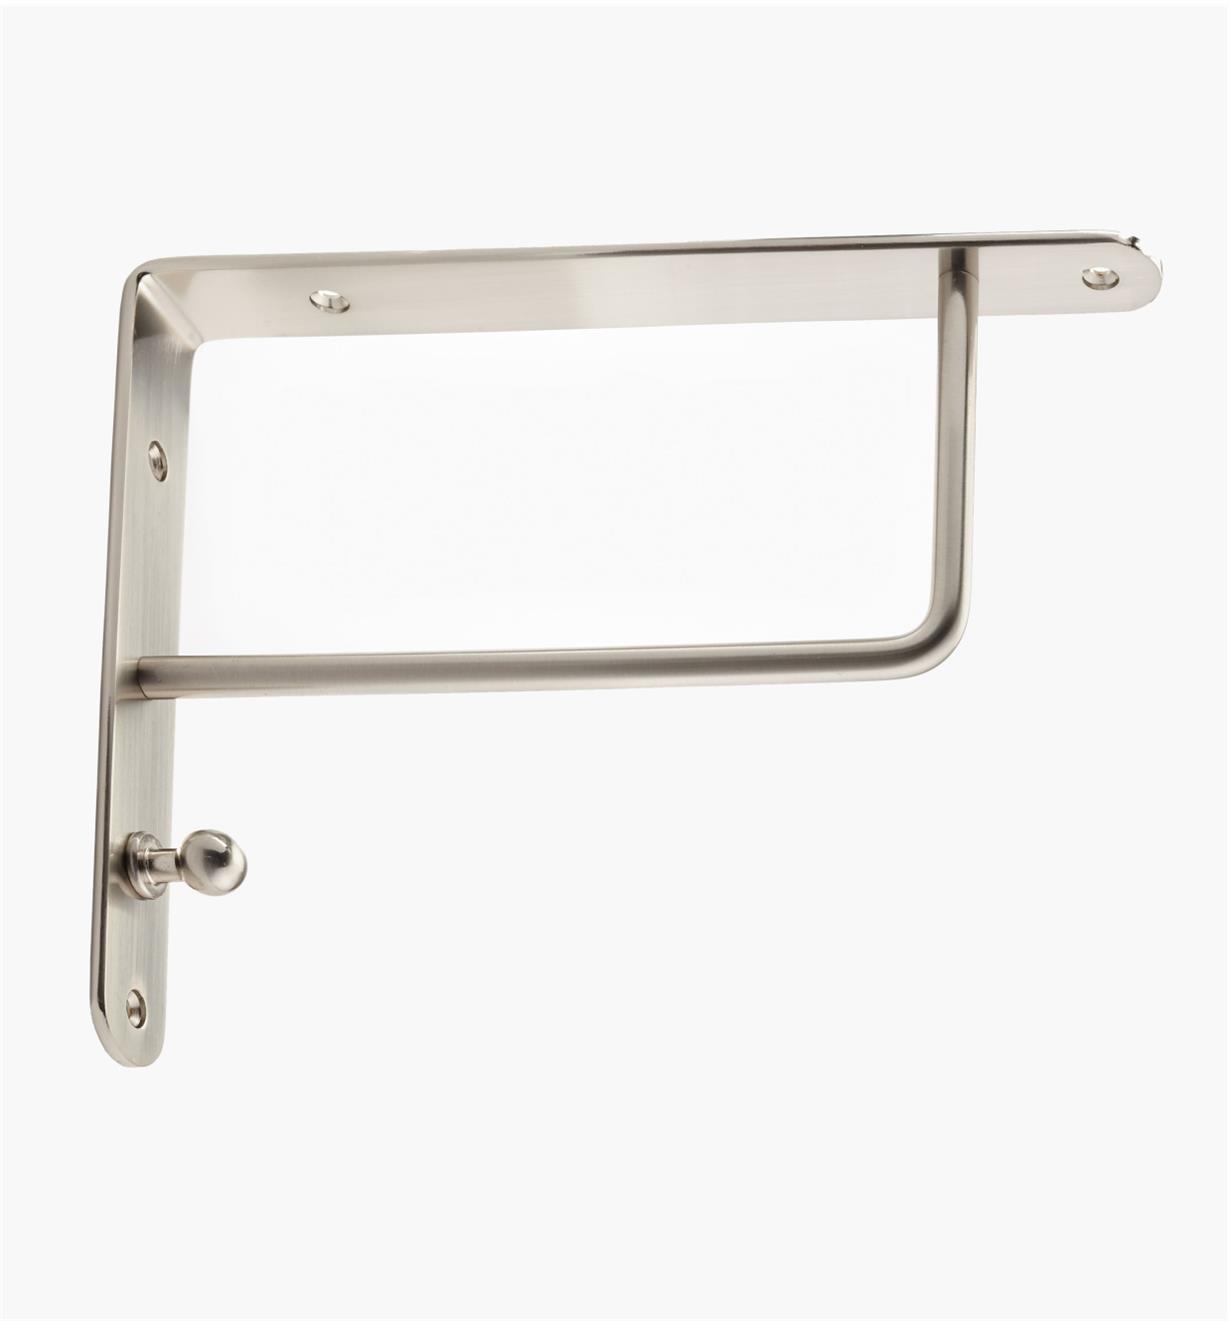 00S0656 -  Flat Steel Shelf Bracket, Brushed Nickel